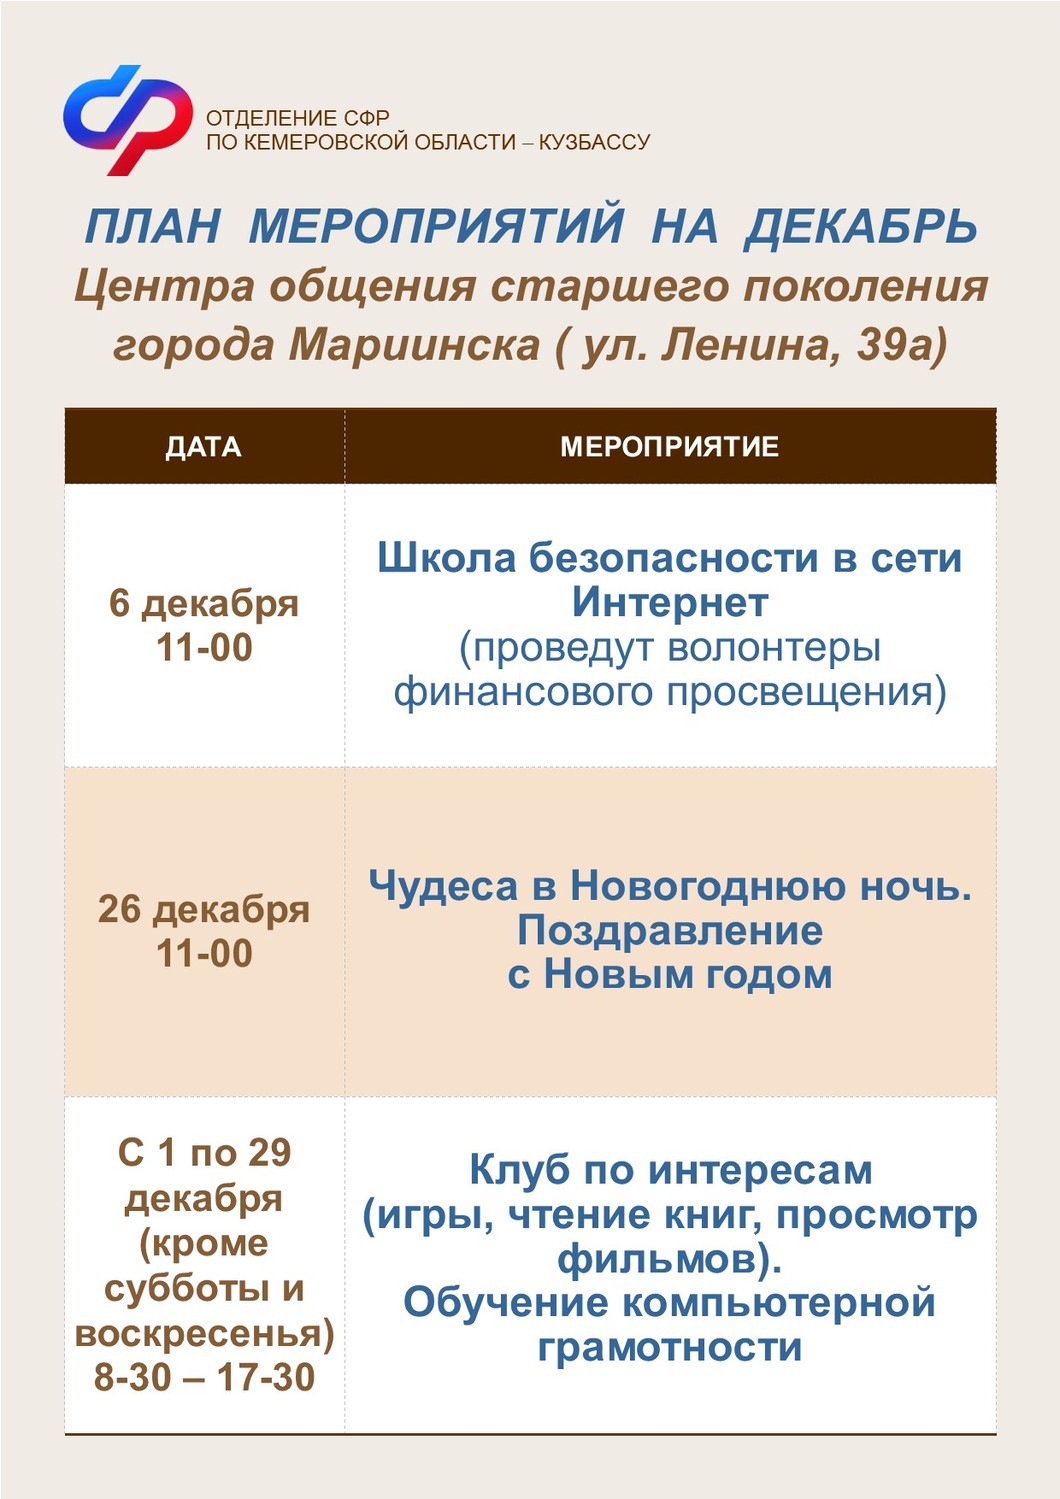 План мероприятий на декабрь Центров общения старшего поколения города Мариинска